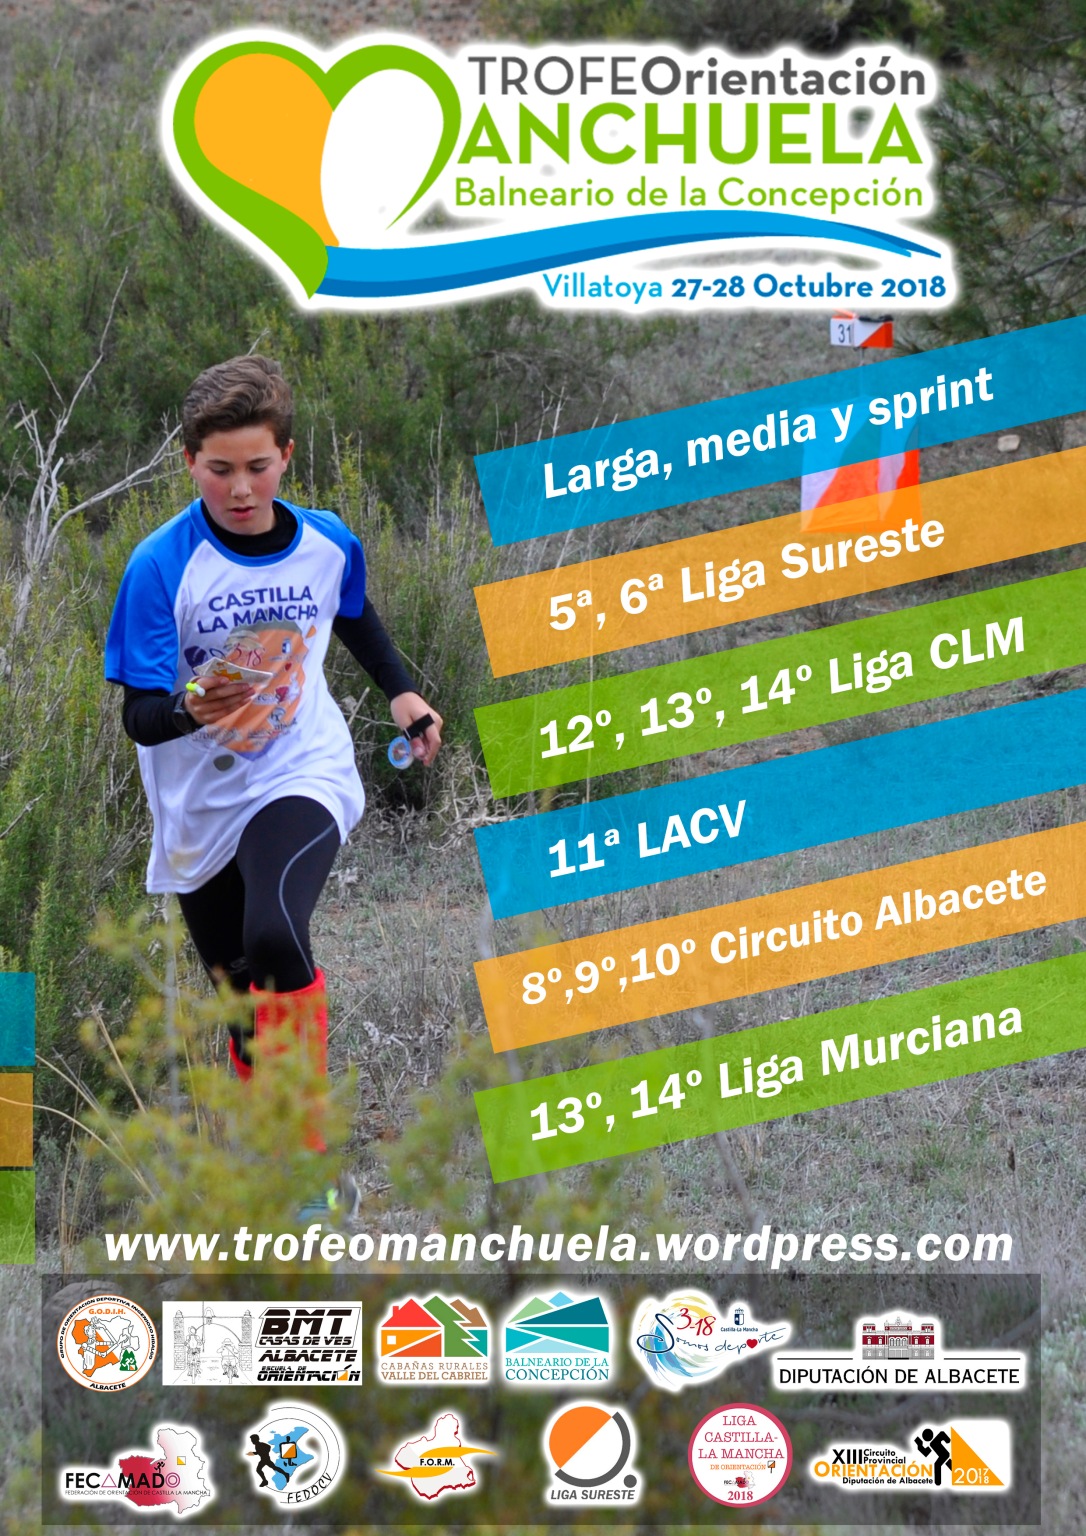 Trofeo Manchuela 2018 HD.jpg